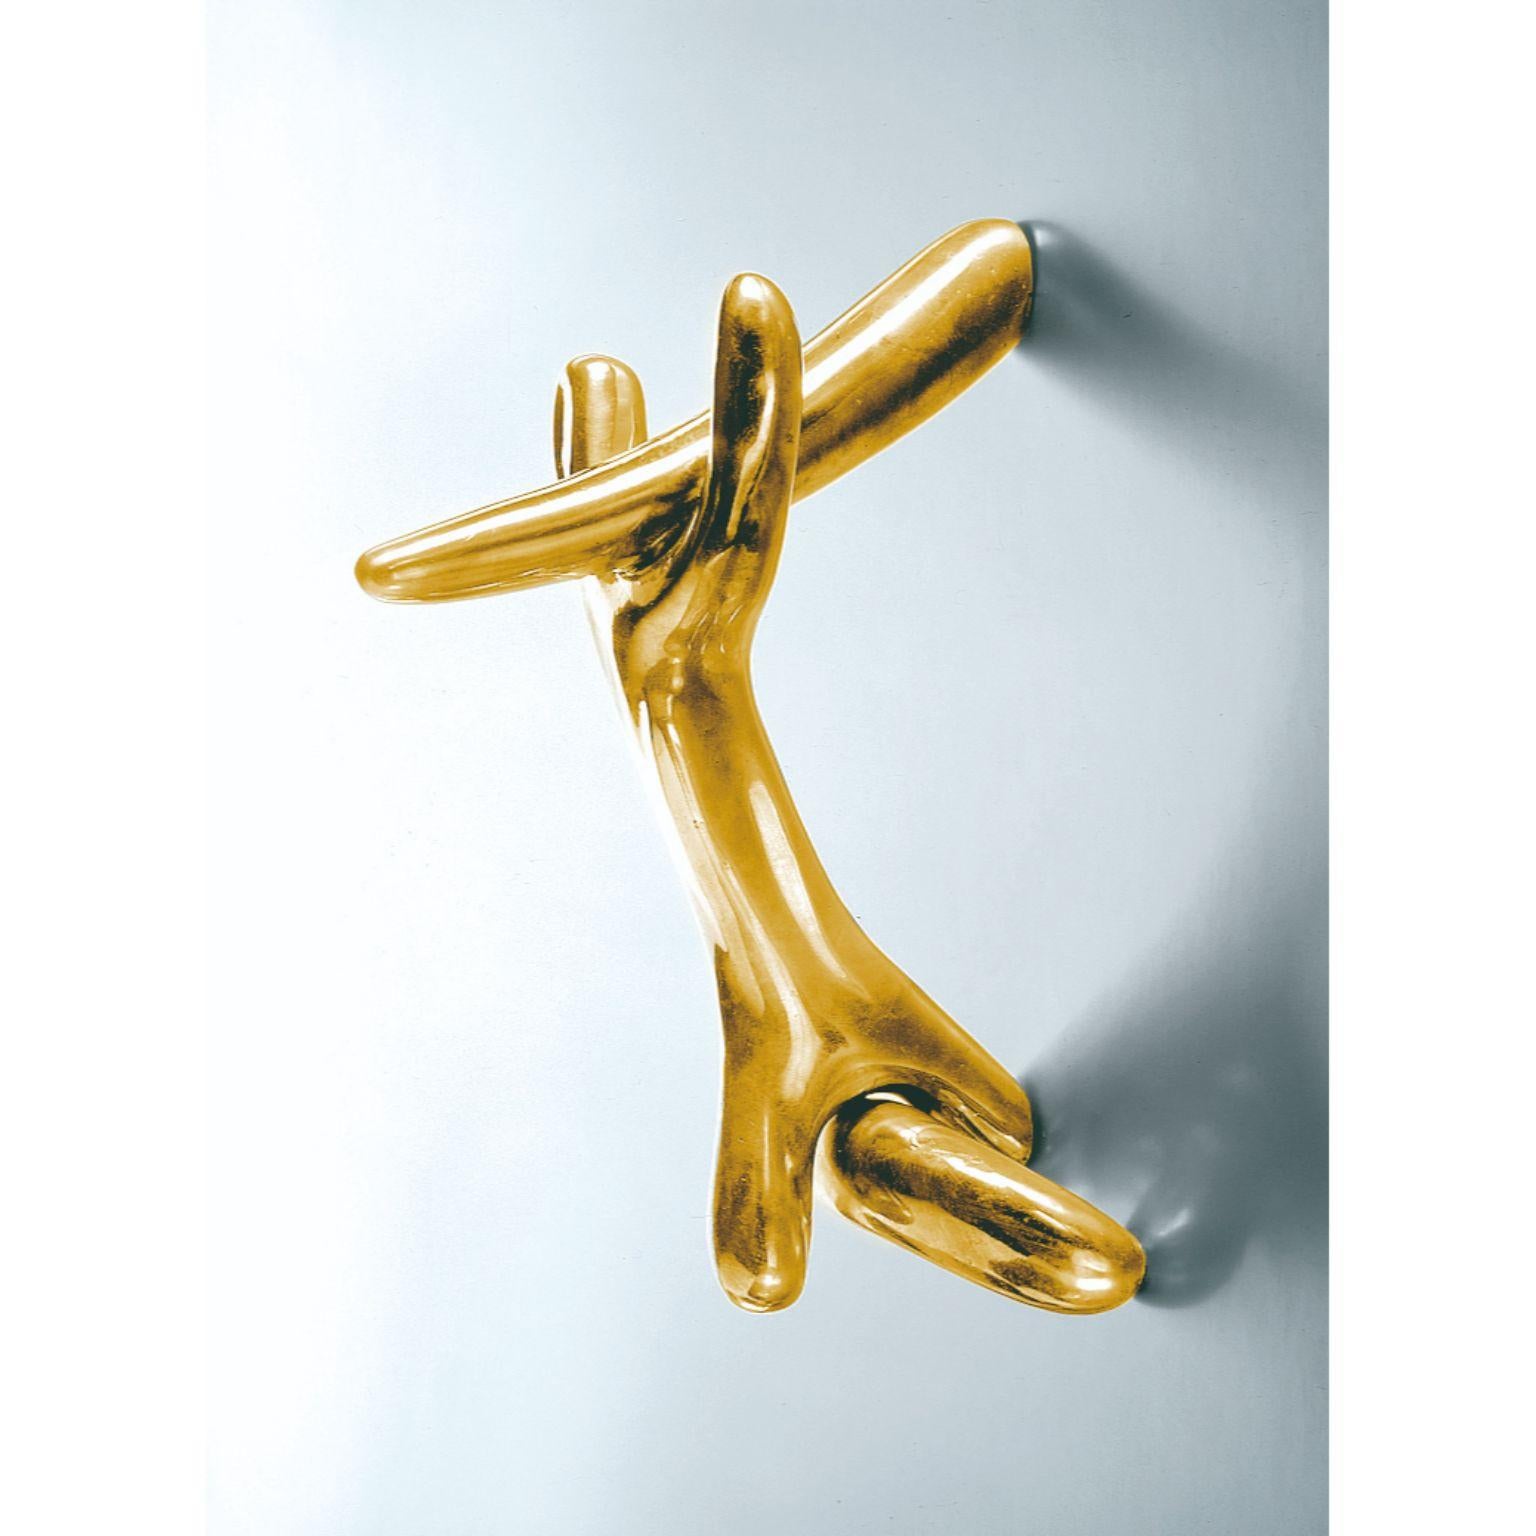 Bouton de porte Rinocerontico de Salvador Dalí 
1937
Dimensions : 13 x 19 x 24 h cm
Matériaux : Bronze coulé

Trois pièces solides fusionnées par moulage à la cire perdue en bronze et en acier.
assemblés pour former un seul corps. La surface